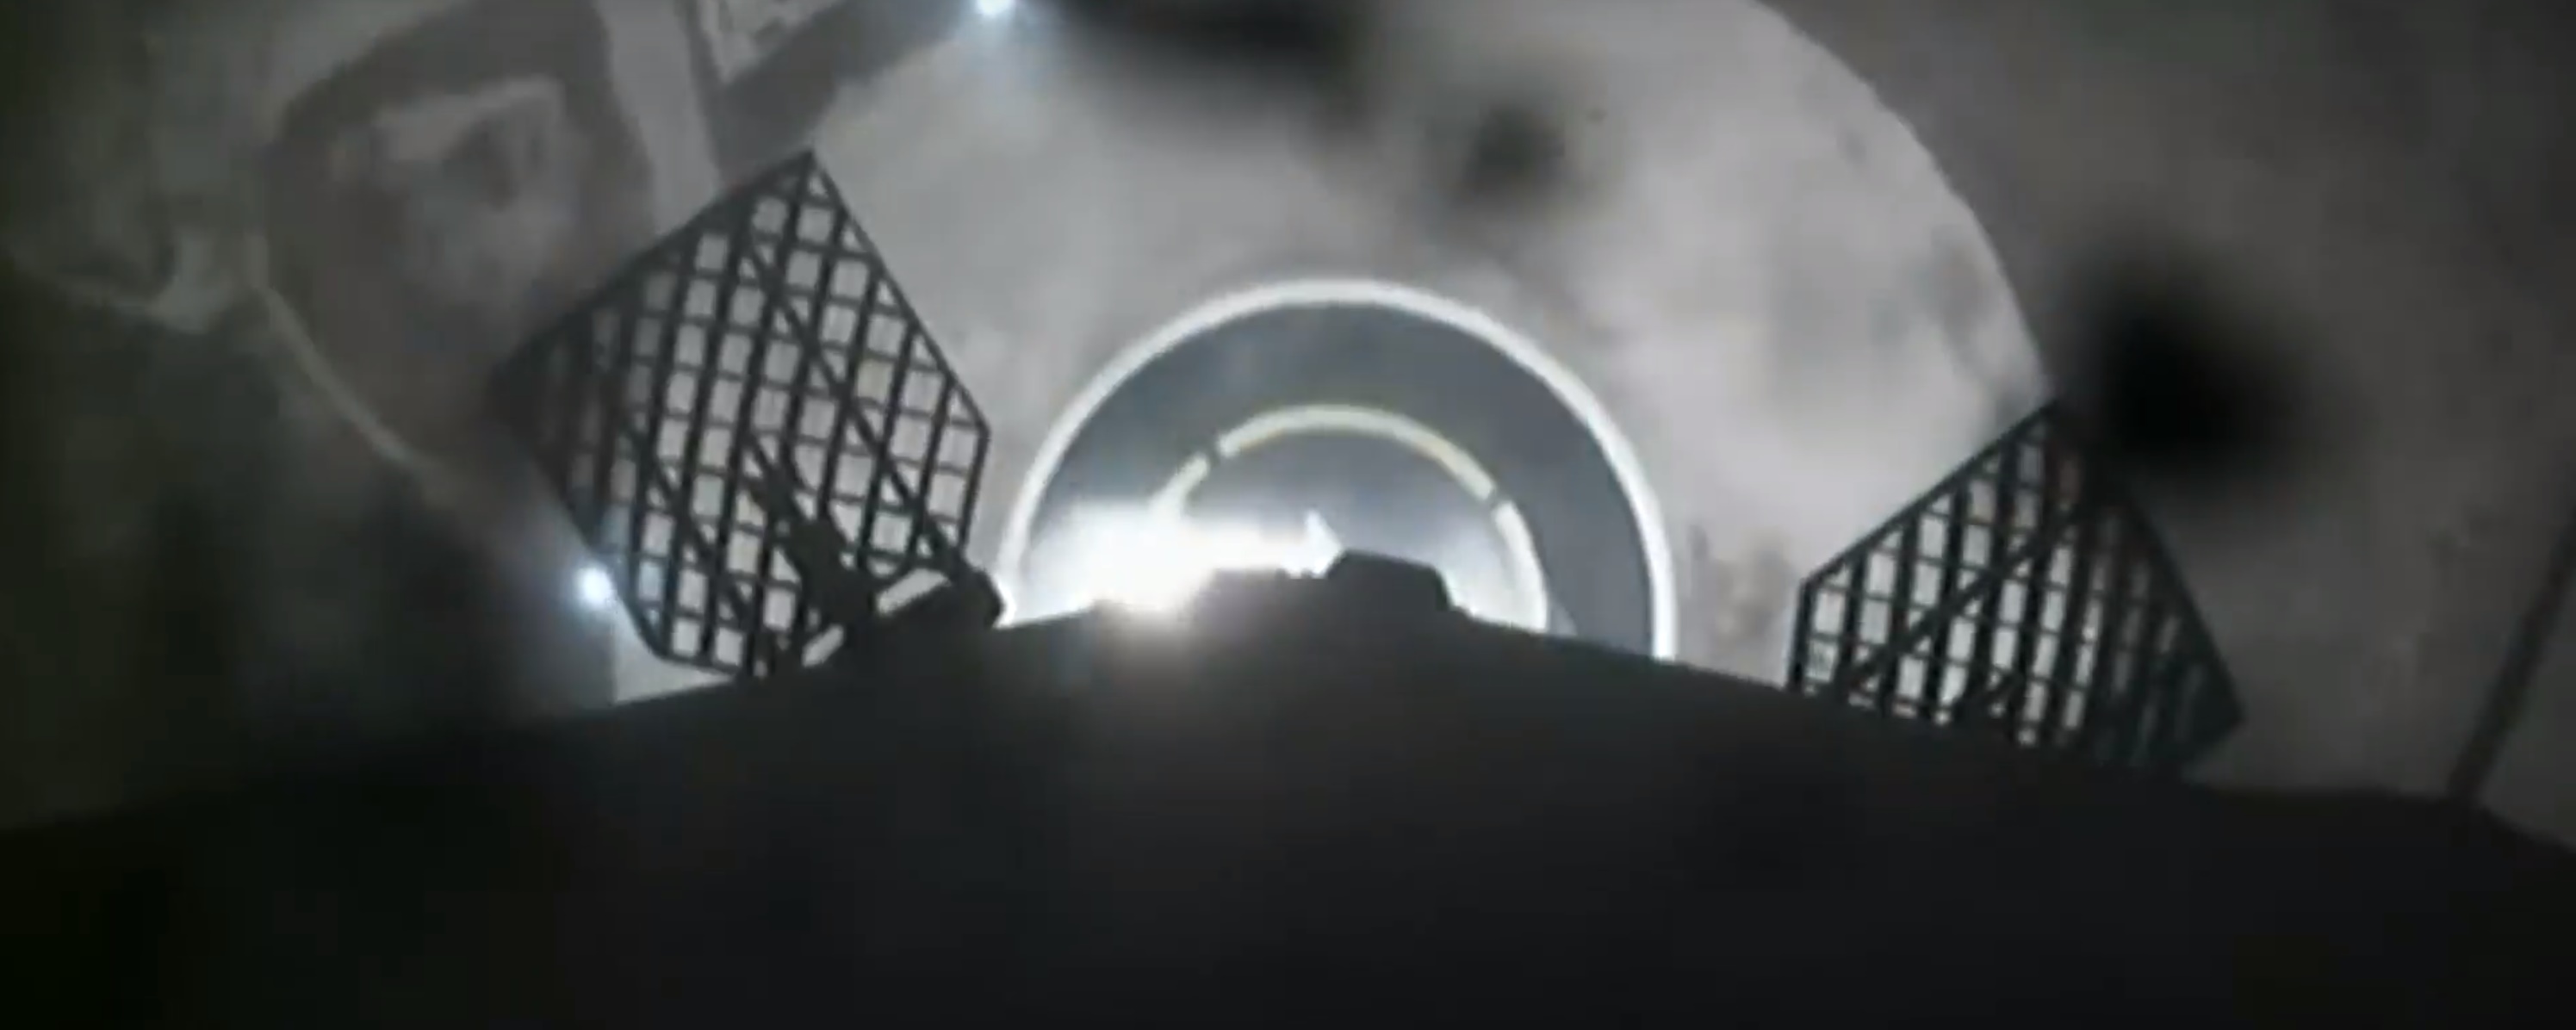 Zuma landing 1 (SpaceX)